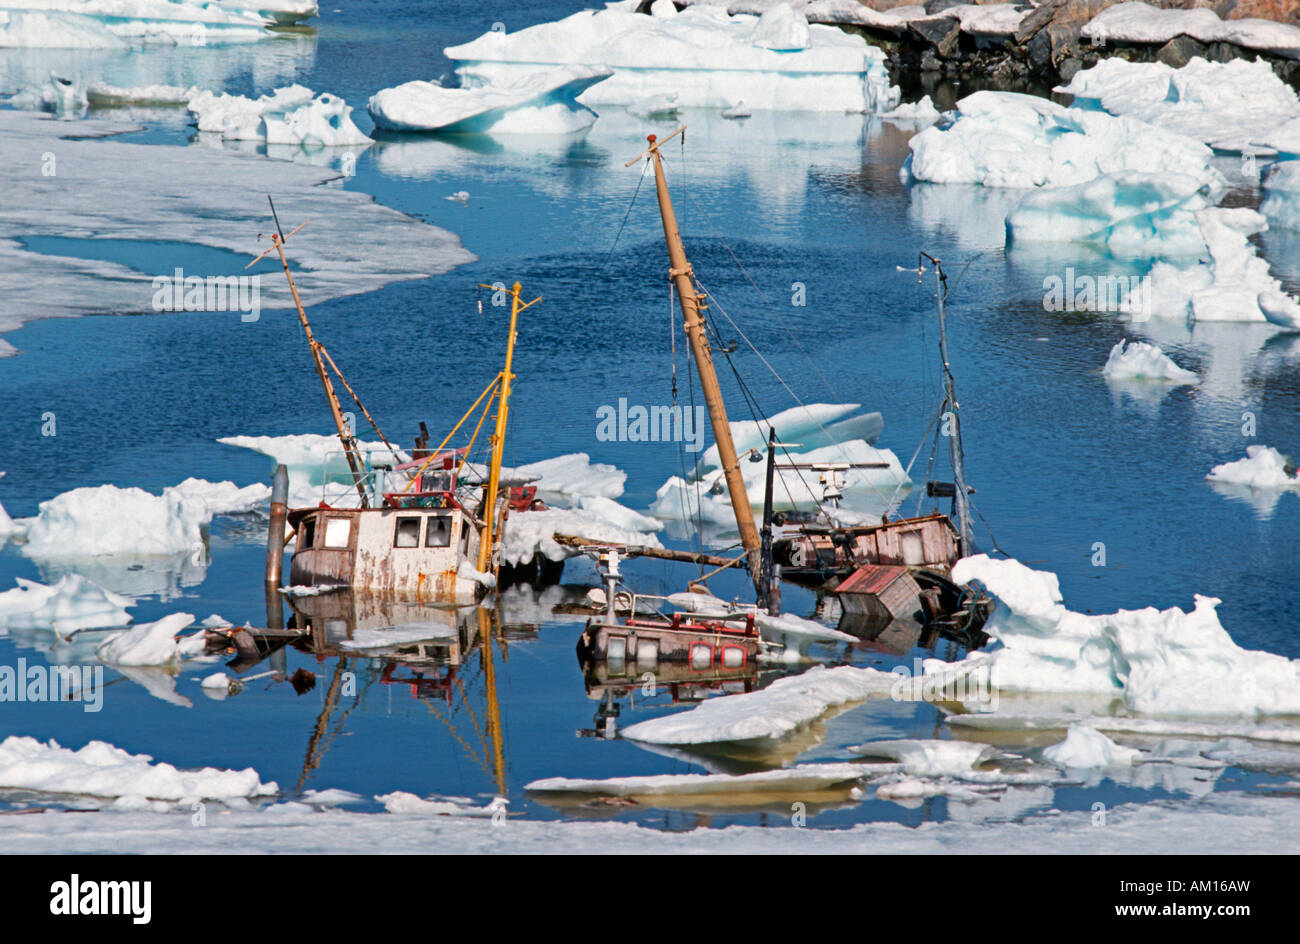 Cimetière de navires, la baie de Disko, Ilulissat, Groenland, Danemark Banque D'Images